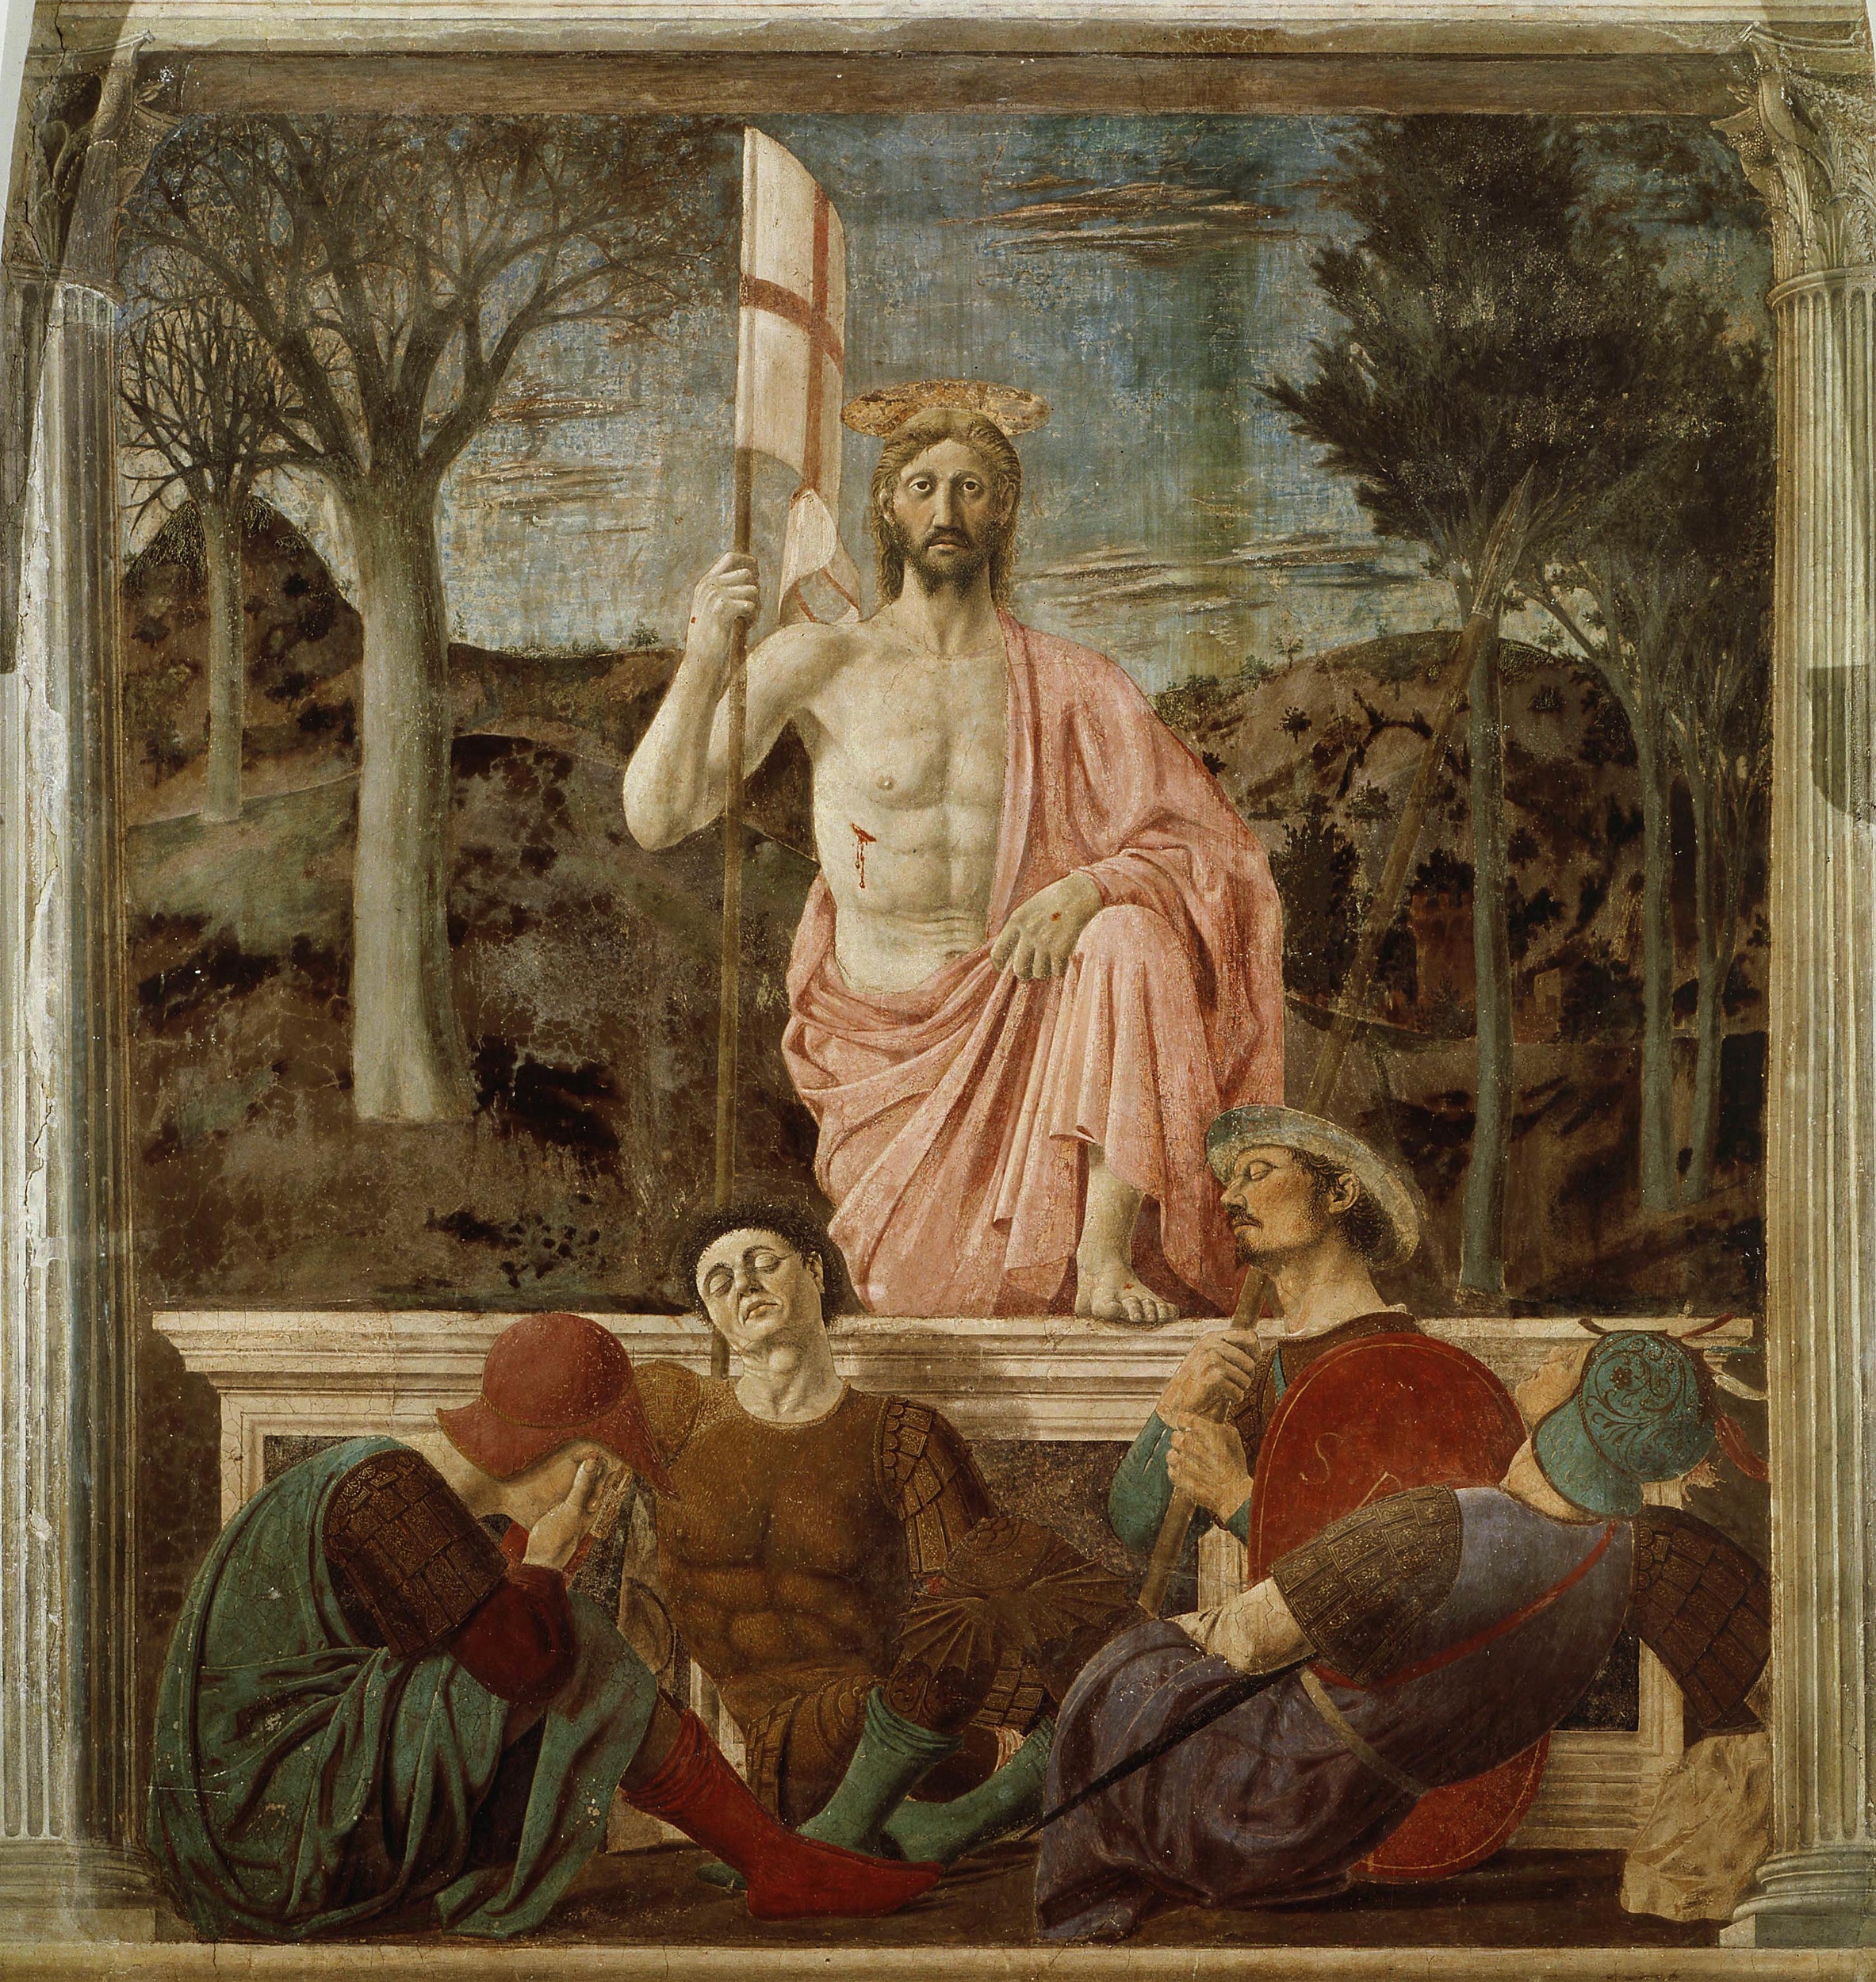 Die Auferstehung  by Piero della Francesca - 1465 - 89 in × 79 in Museo Civico, Sansepolcro